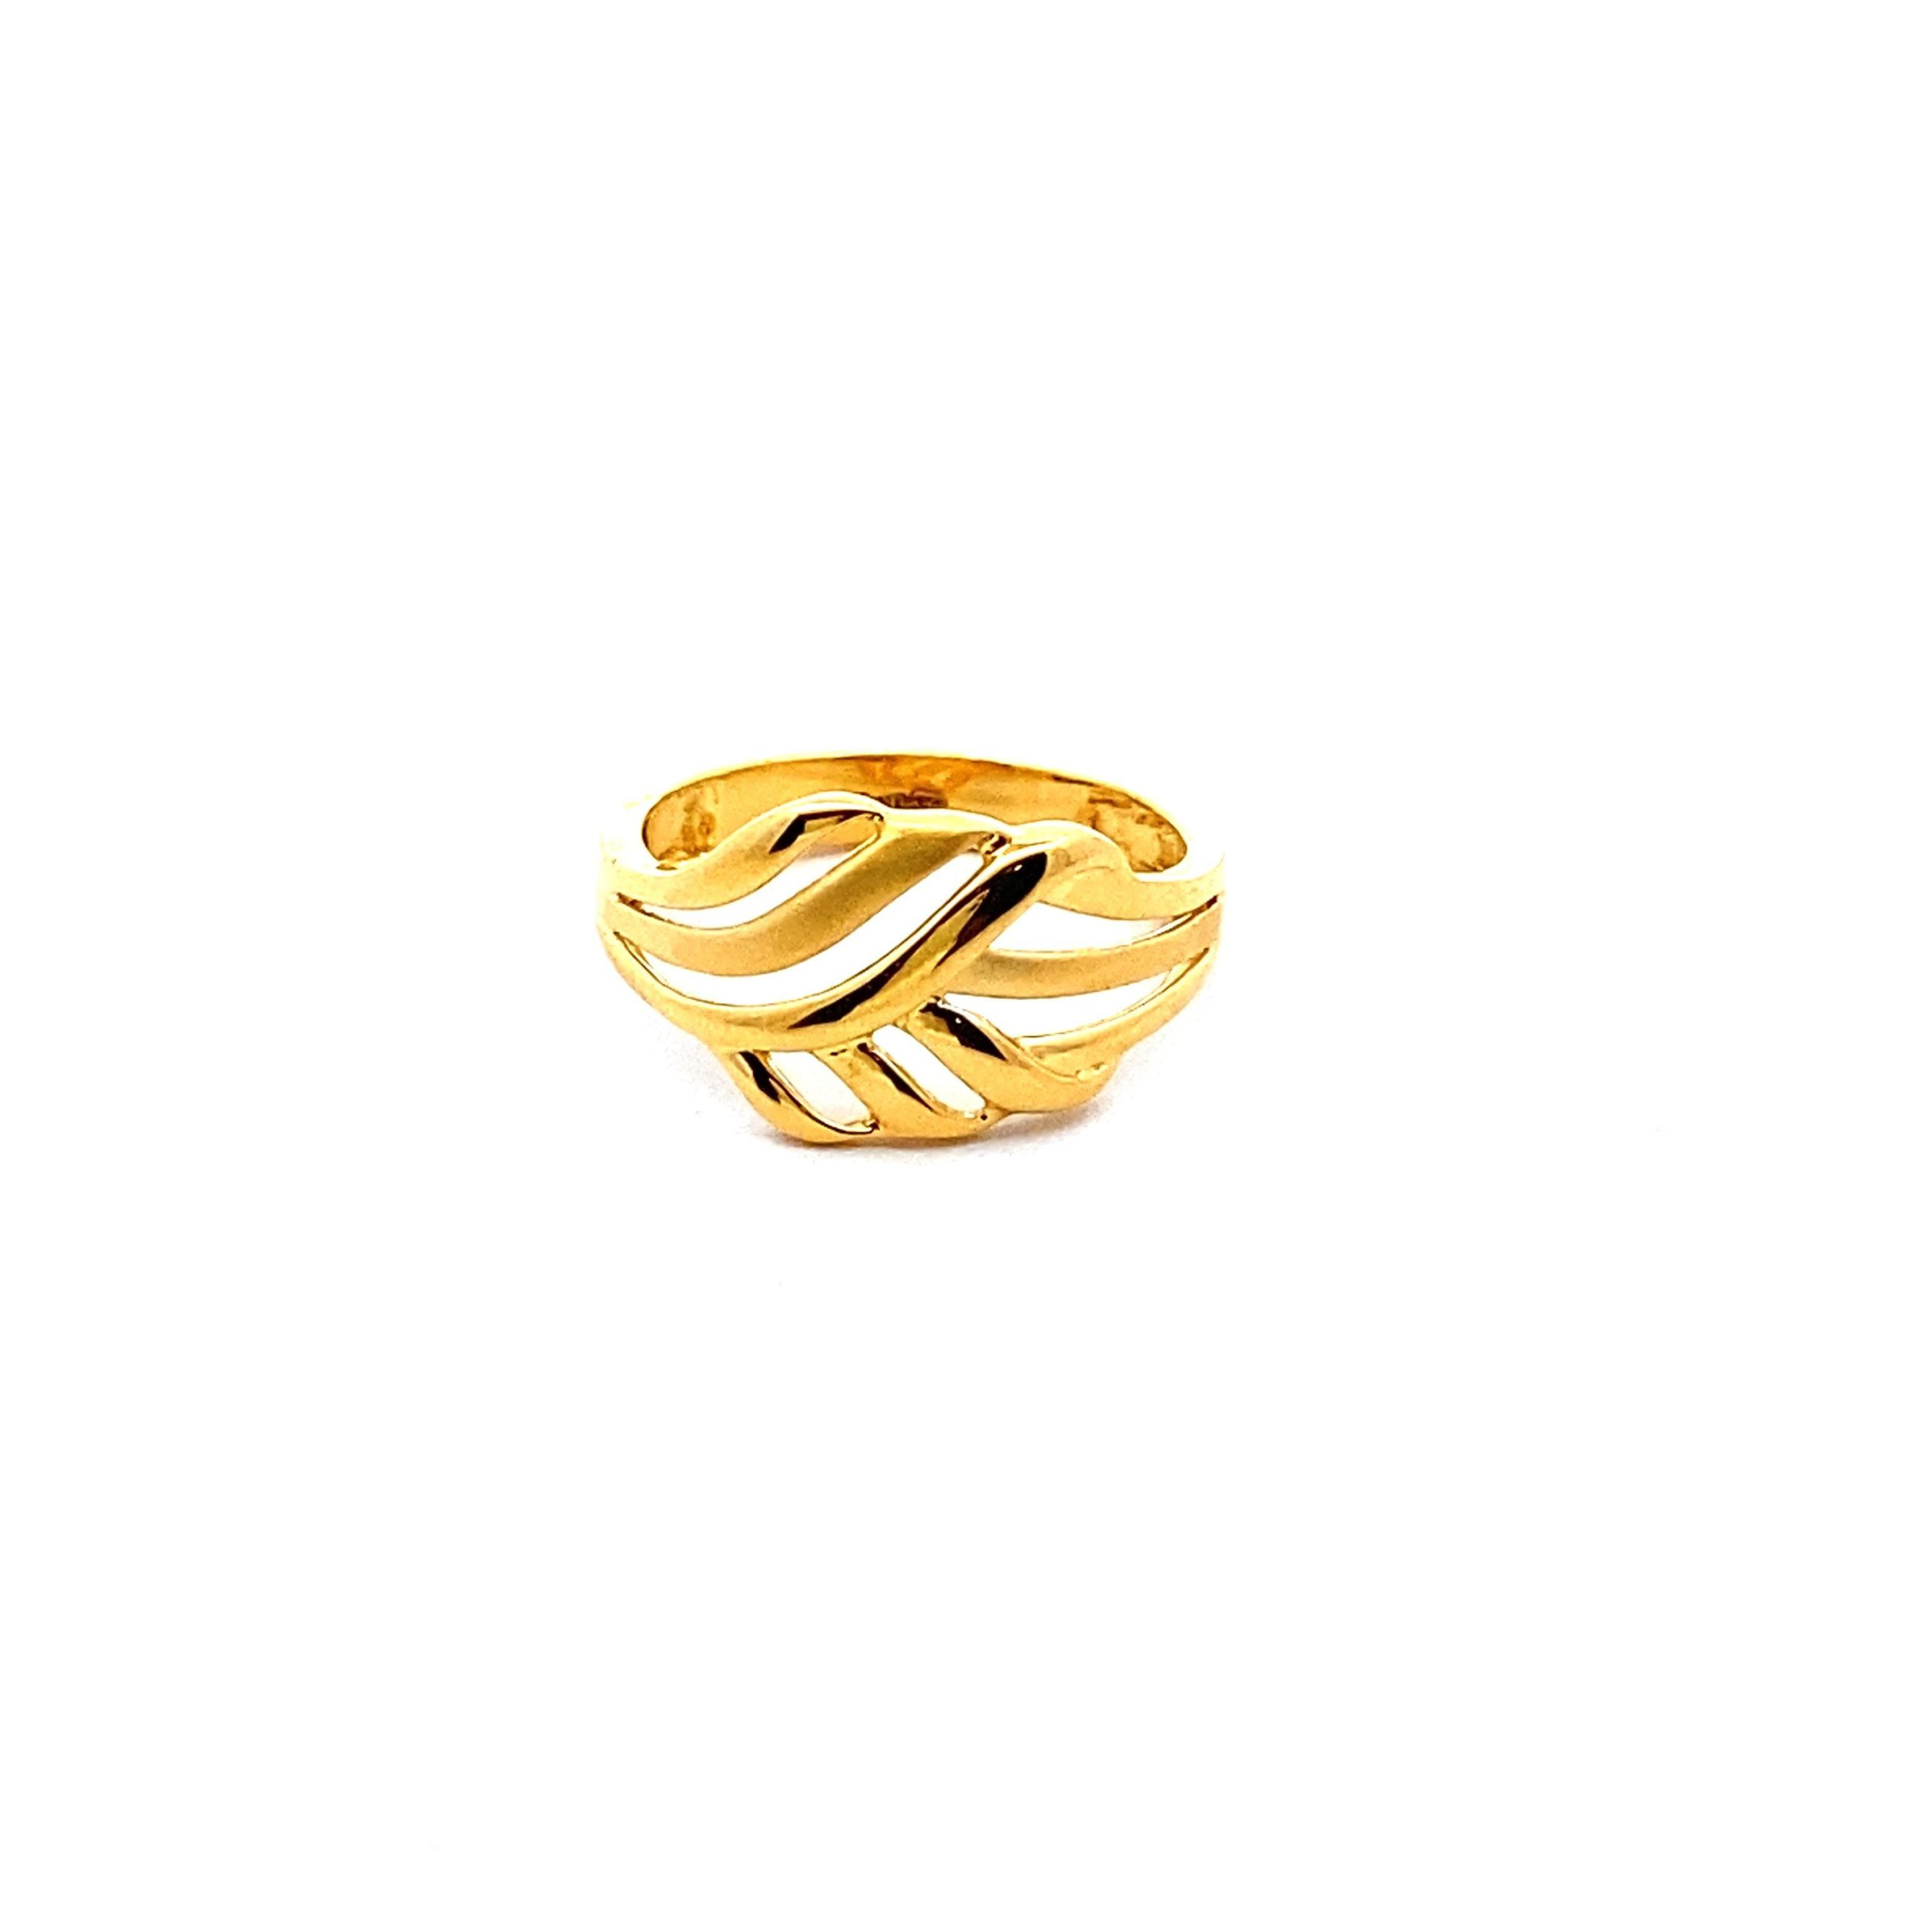 Rings: Shop Gold Finger Rings for Women & Girls | PC Chandra